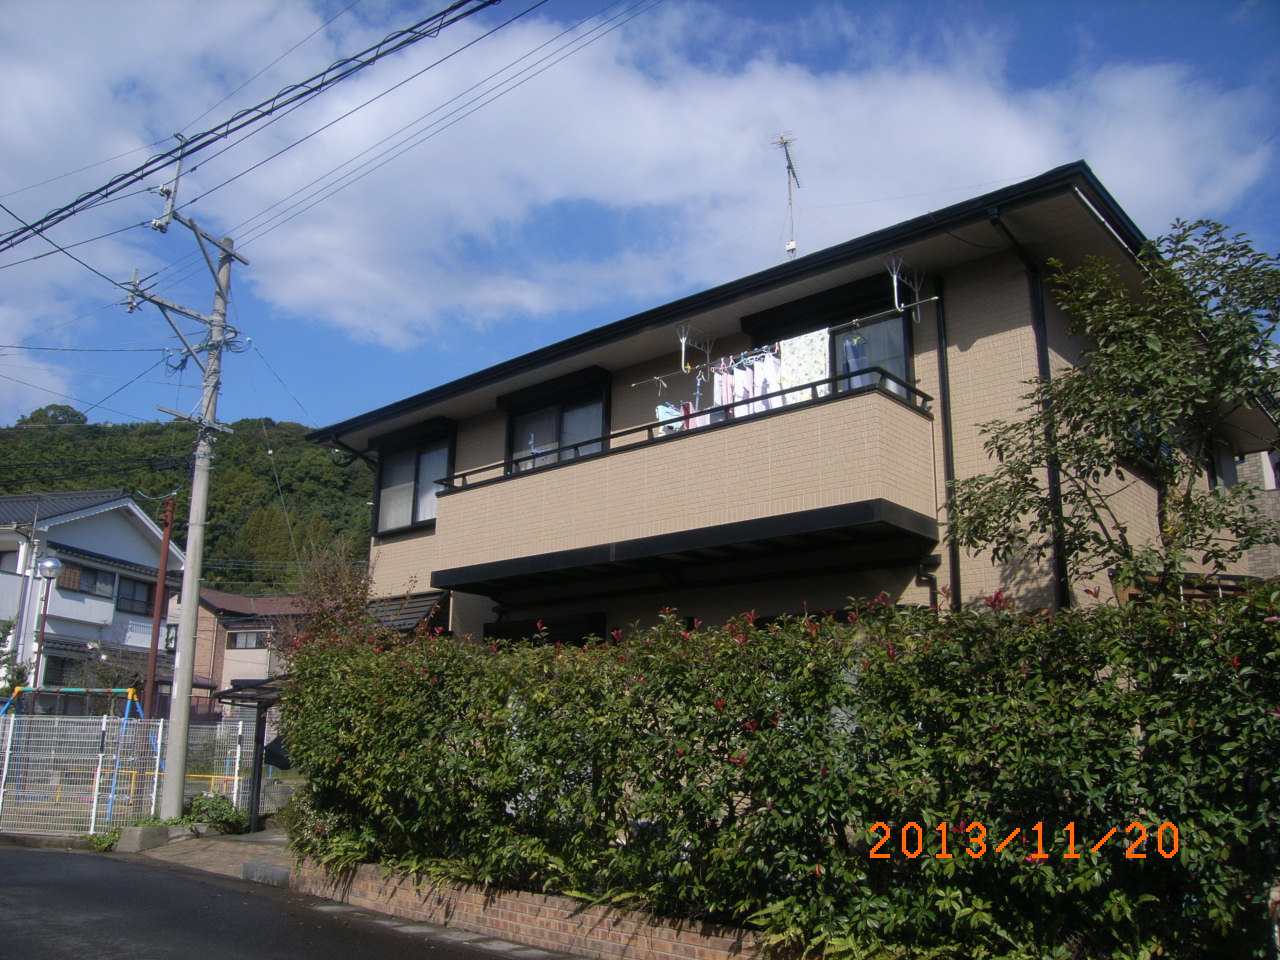 http://www.mitsuo-tosou.com/blog/item/kazuaki/2013/11/21/RIMG0067.JPG